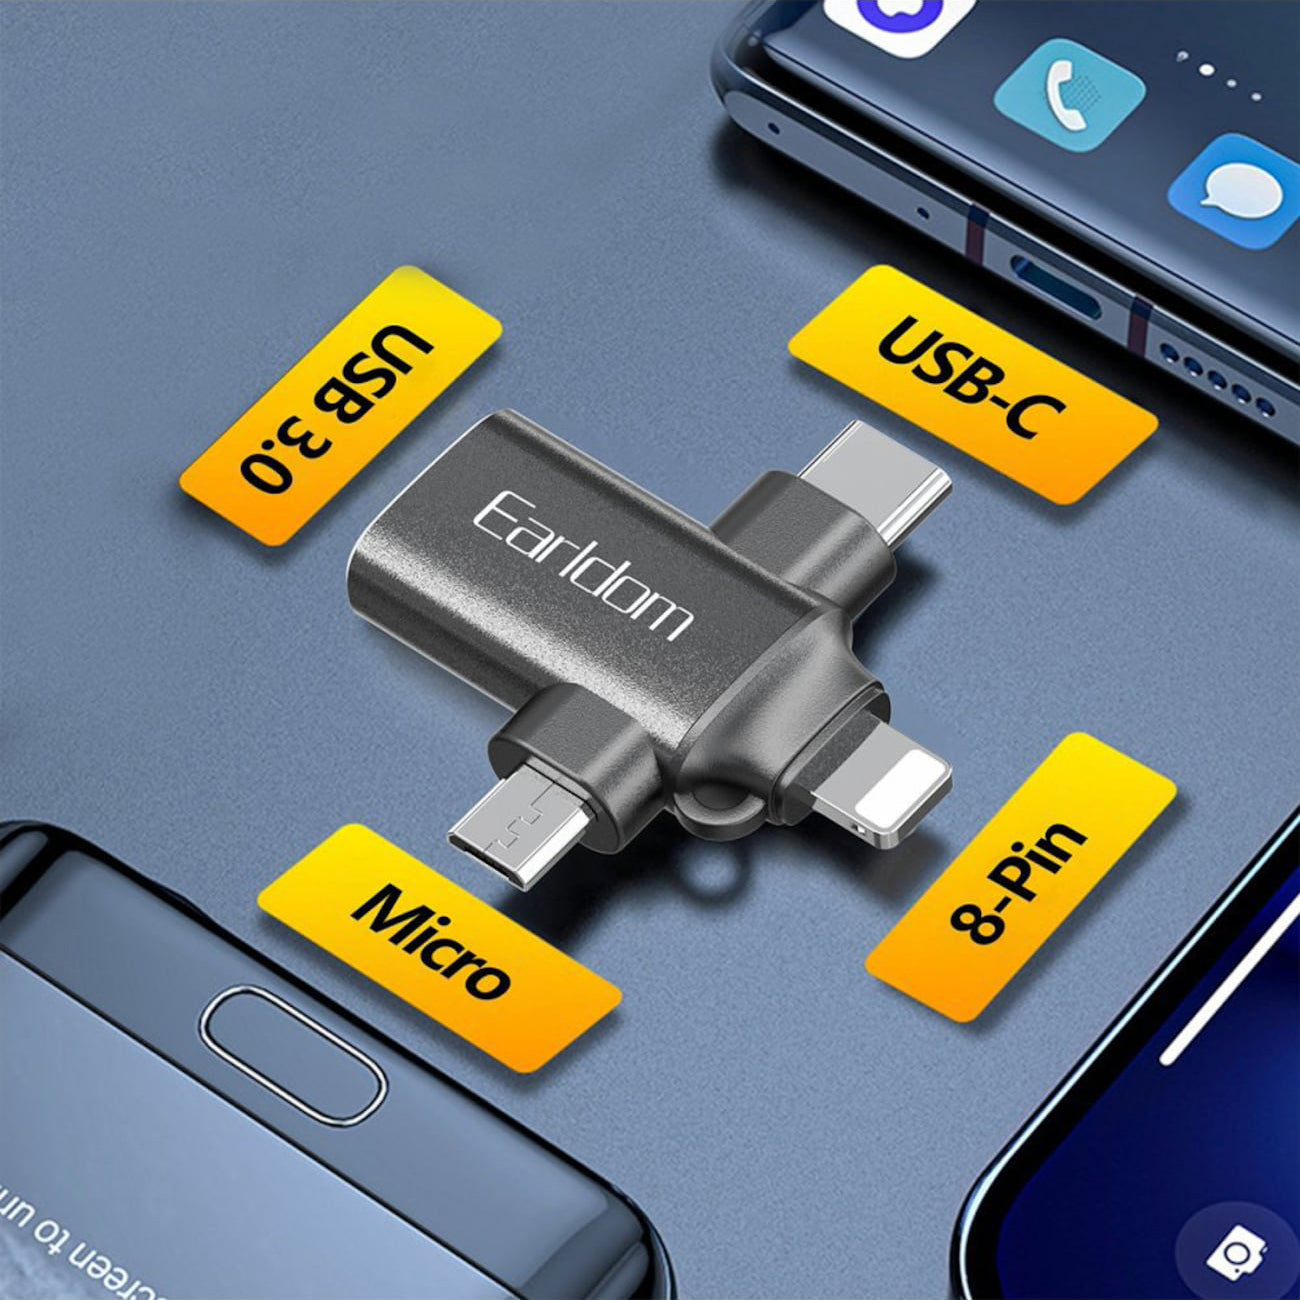 3 in 1 Converter USB 3.0 OTG to Micro USB C Lightning, 3 in 1 OTG Adapterfor Data Transmission